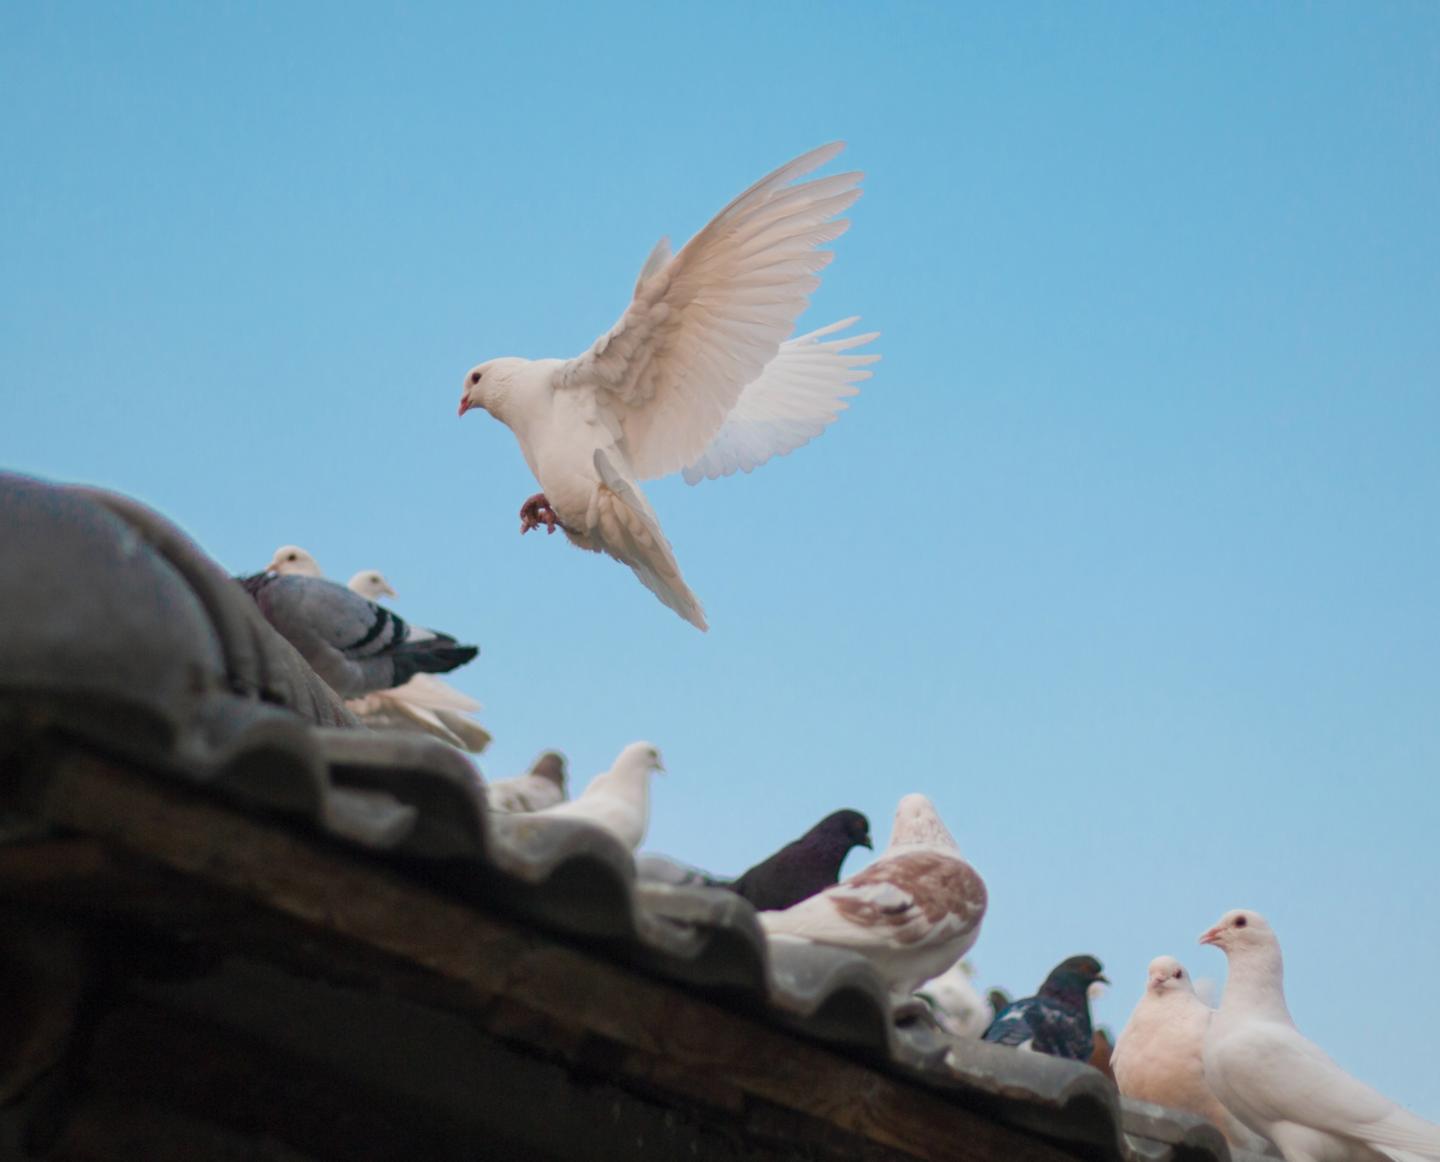 Tauben auf einem Dach (c) Foto von dadalan real auf Unsplash